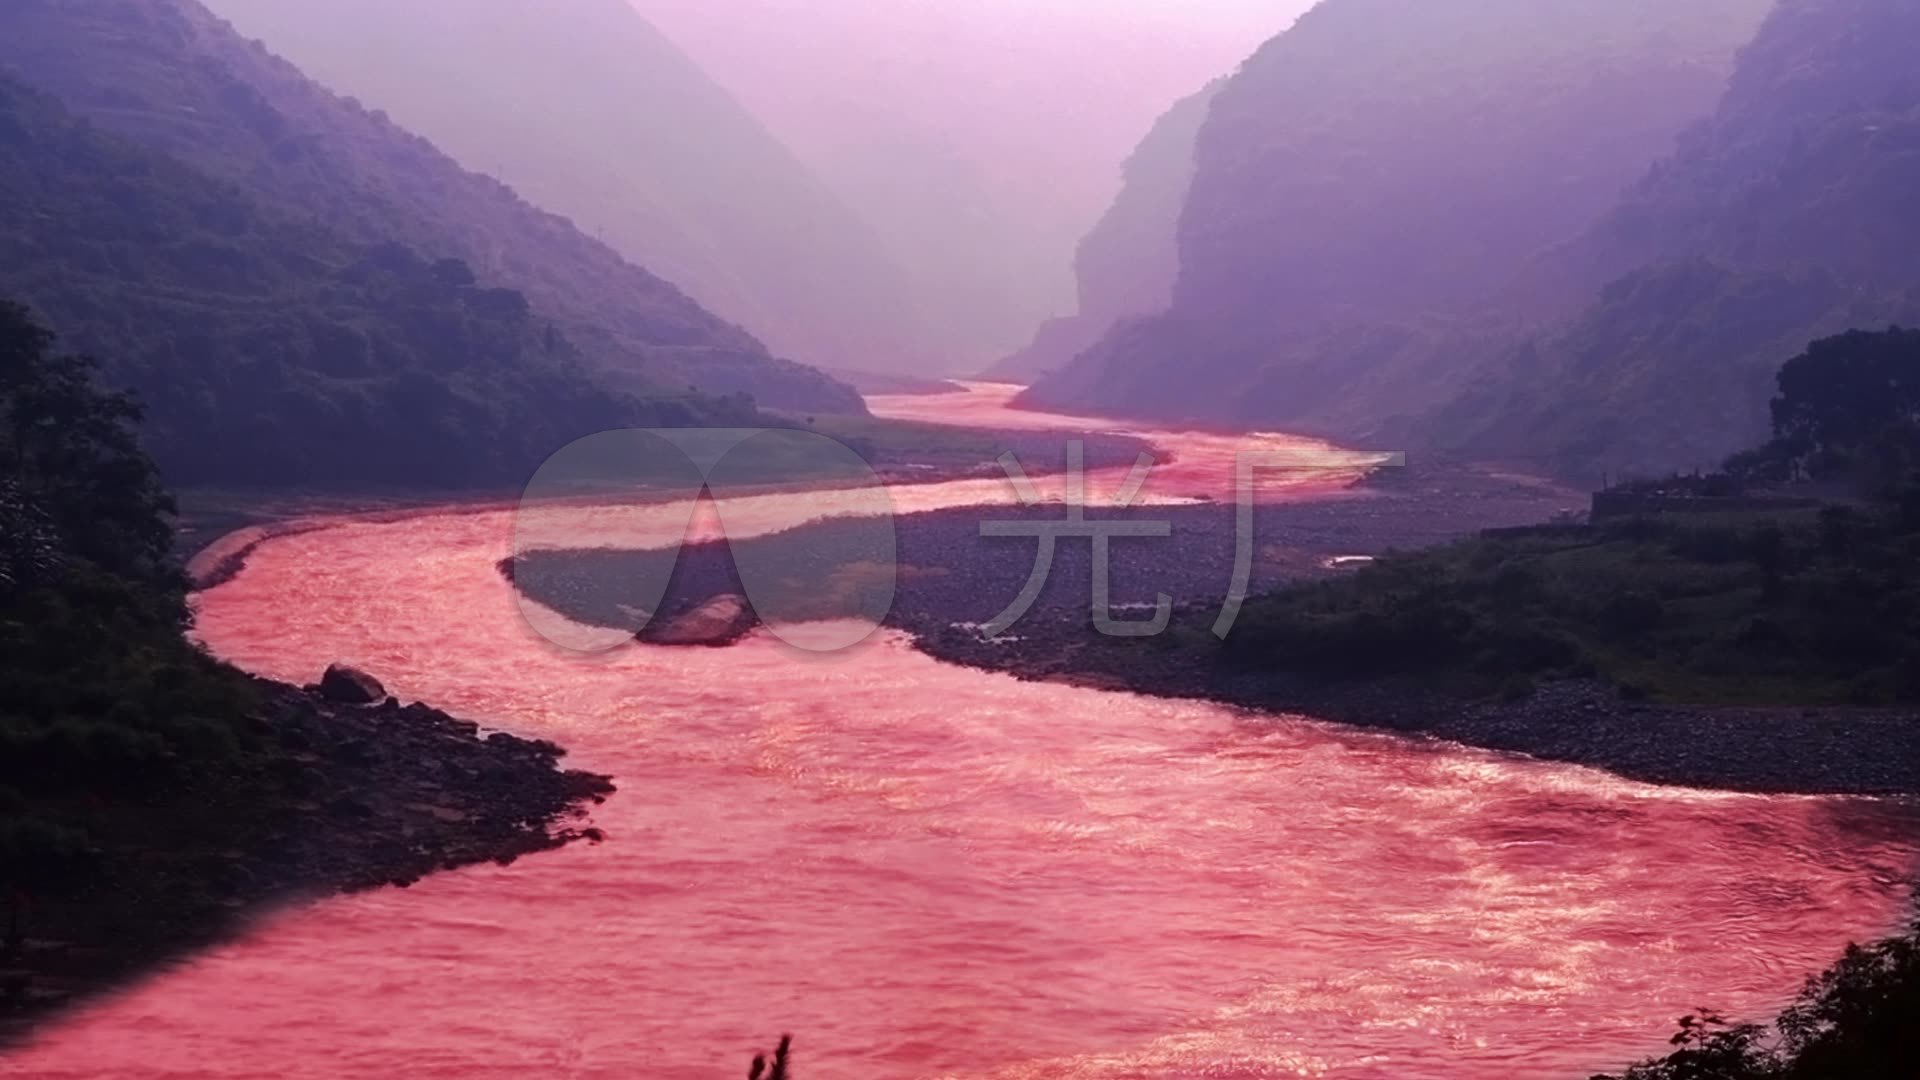 赤水大瀑布 毕节织金洞——贵州自驾之旅-遵义旅游攻略-游记-去哪儿攻略